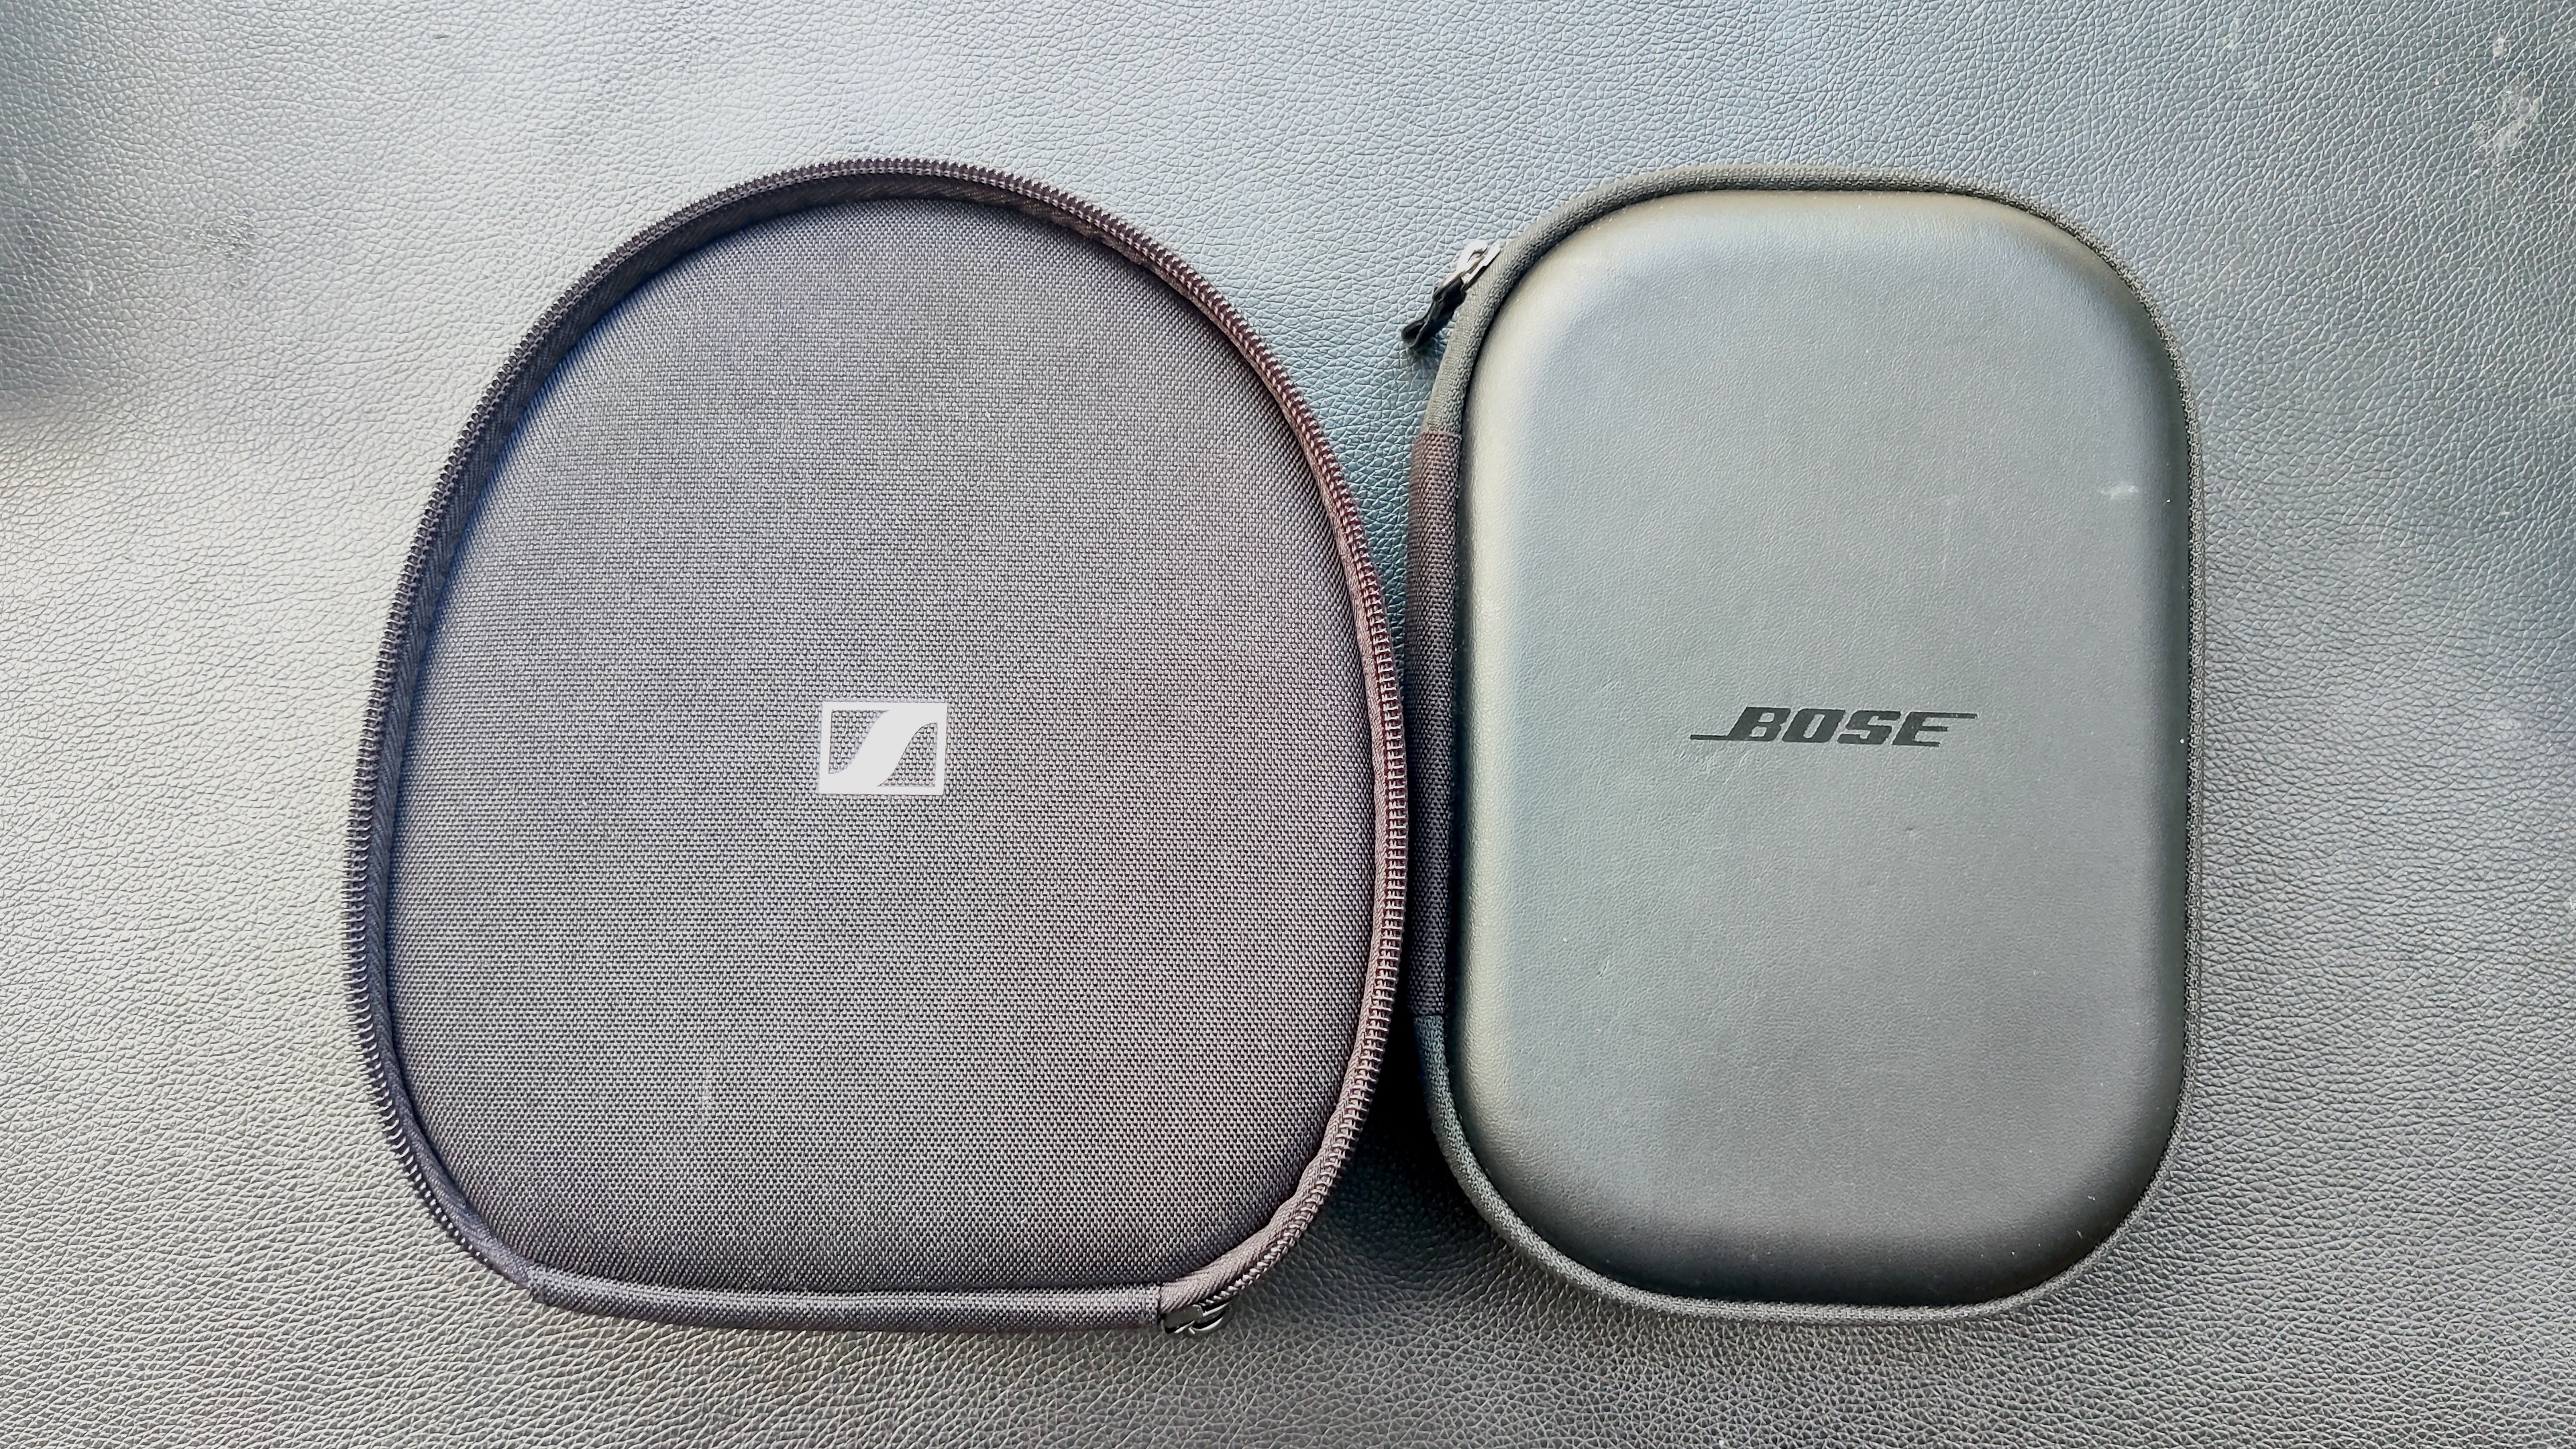 Pair of black headphones cases side by side